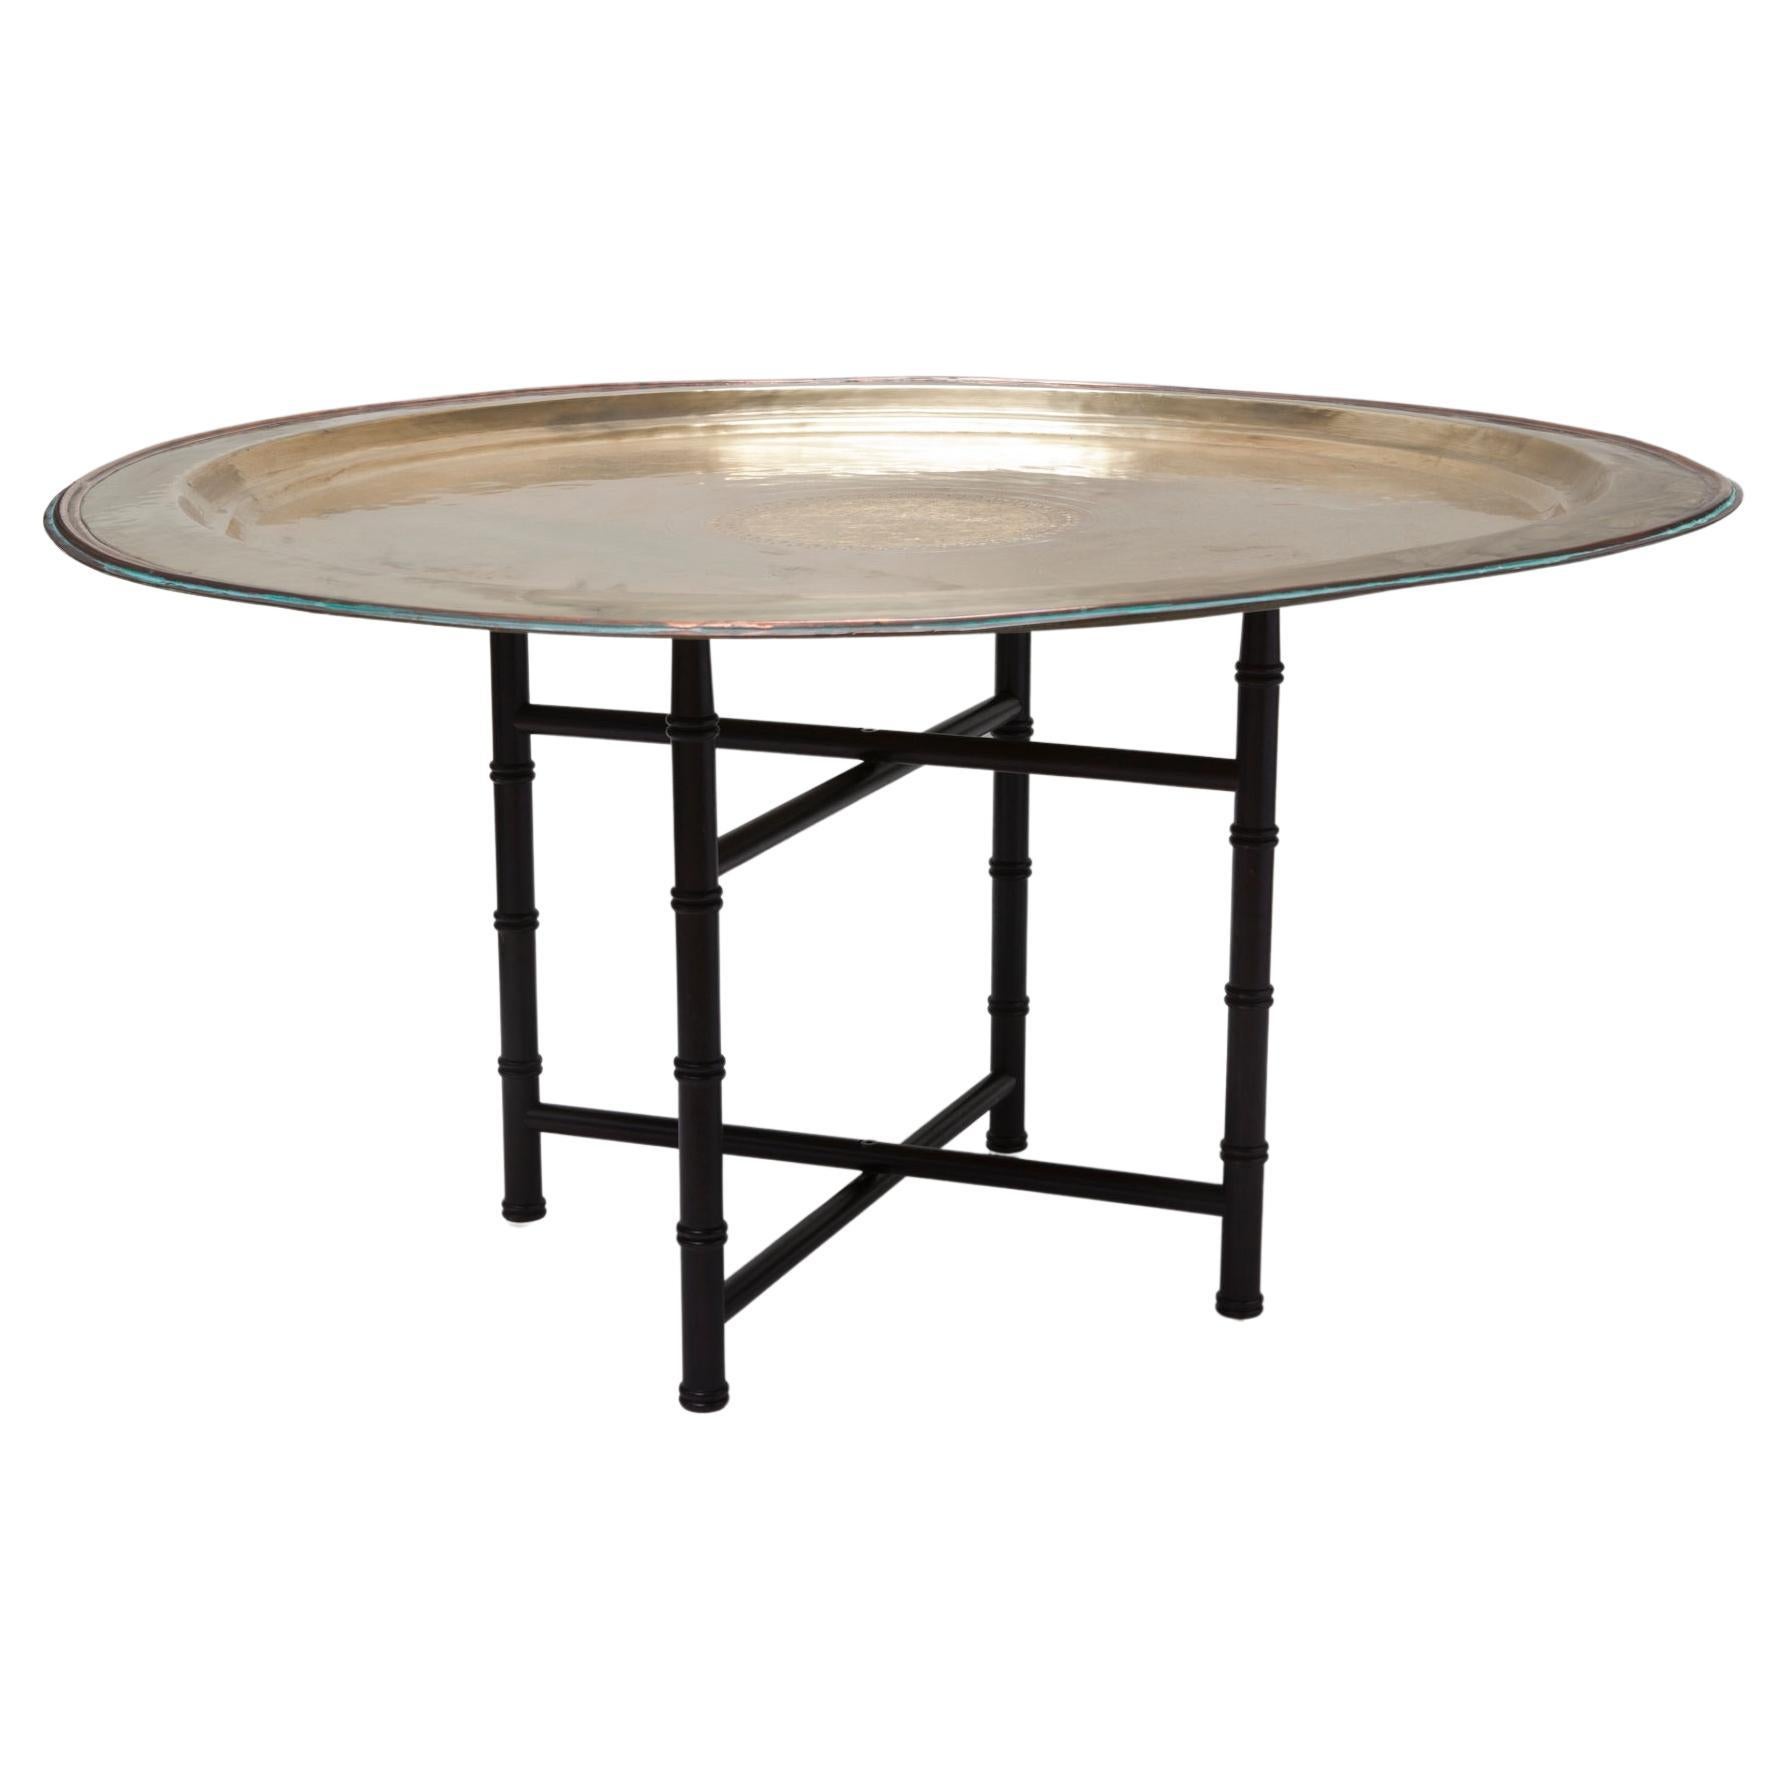 Oversized vintage mid-century brass tray table on ebony folding base.
Table base is 14